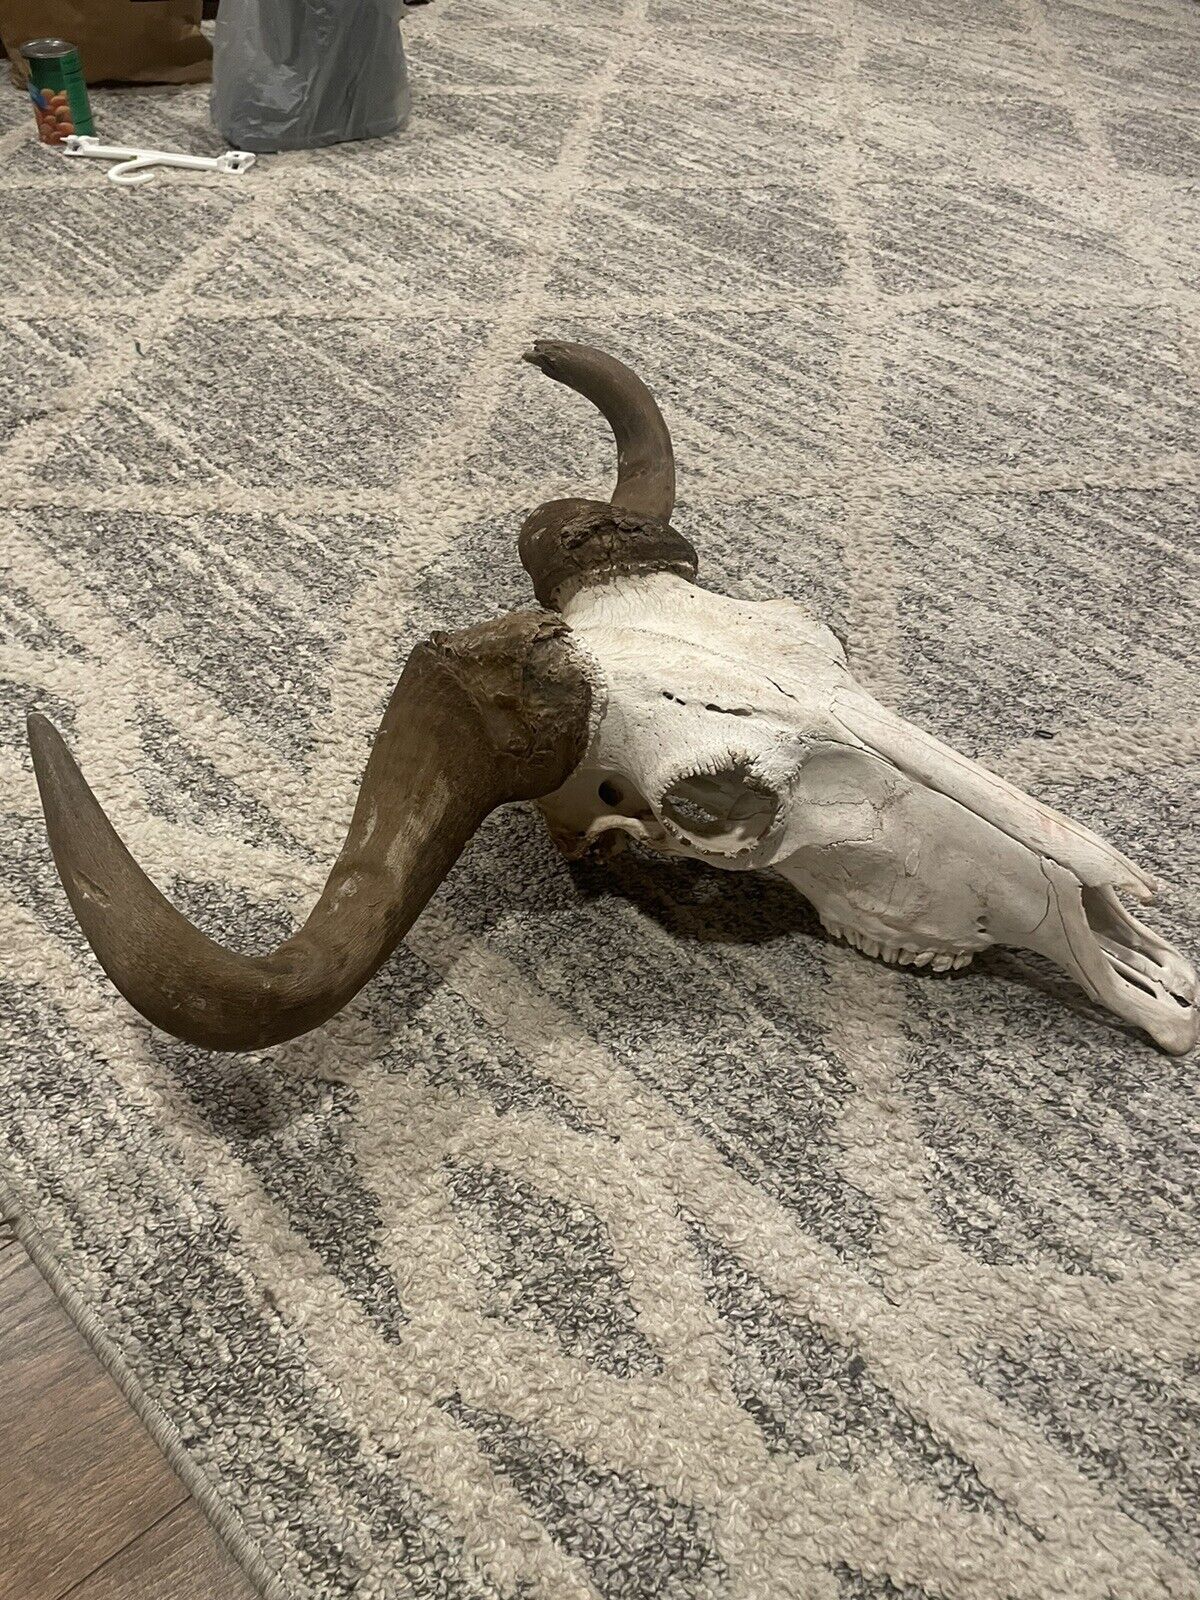 Wildebeast Skull With Horns